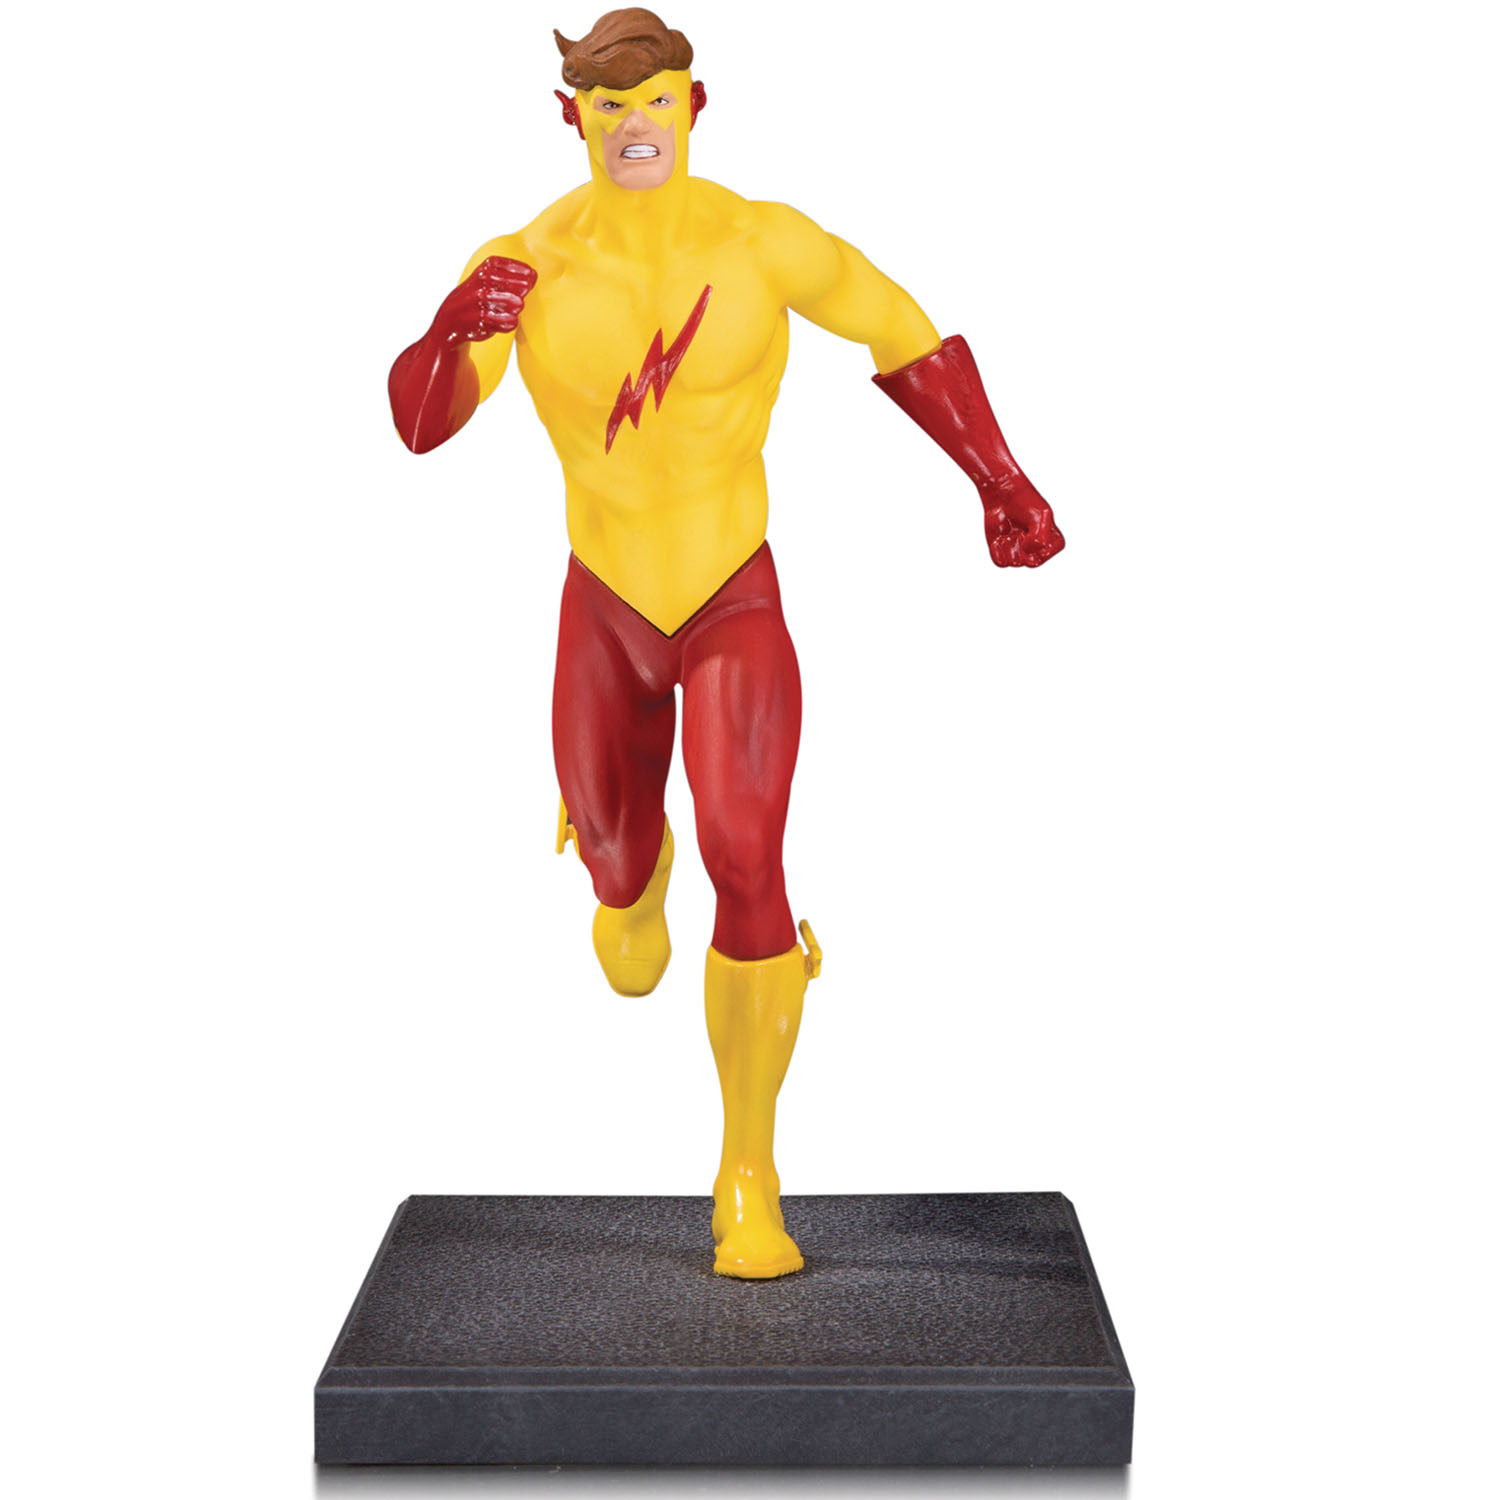 O The Flash e a Super Velocidade – Ciência Nerd